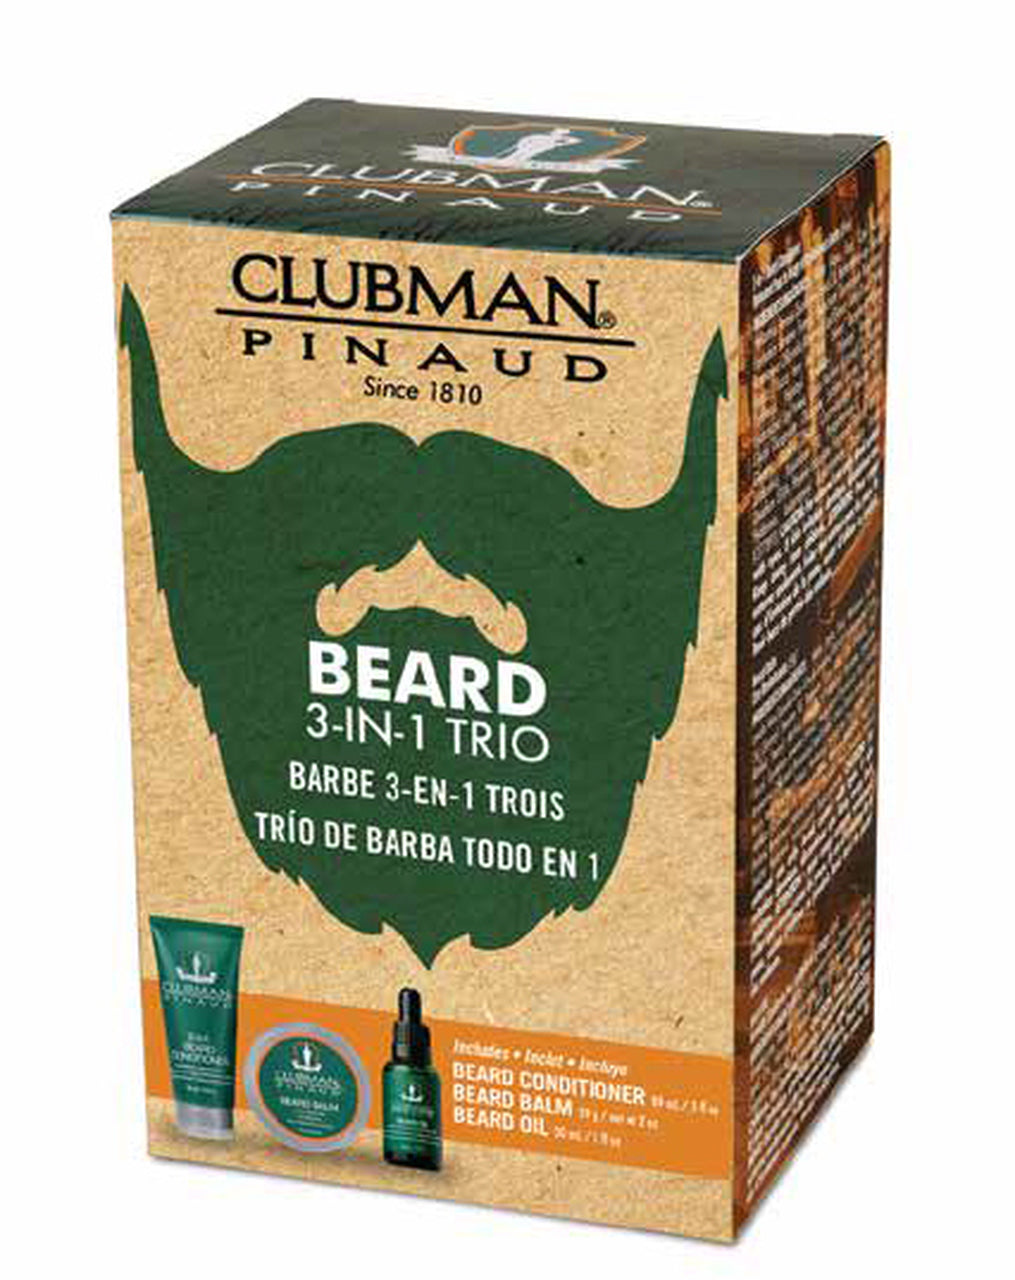 Clubman Pinaud Beard 3 in 1 Trio